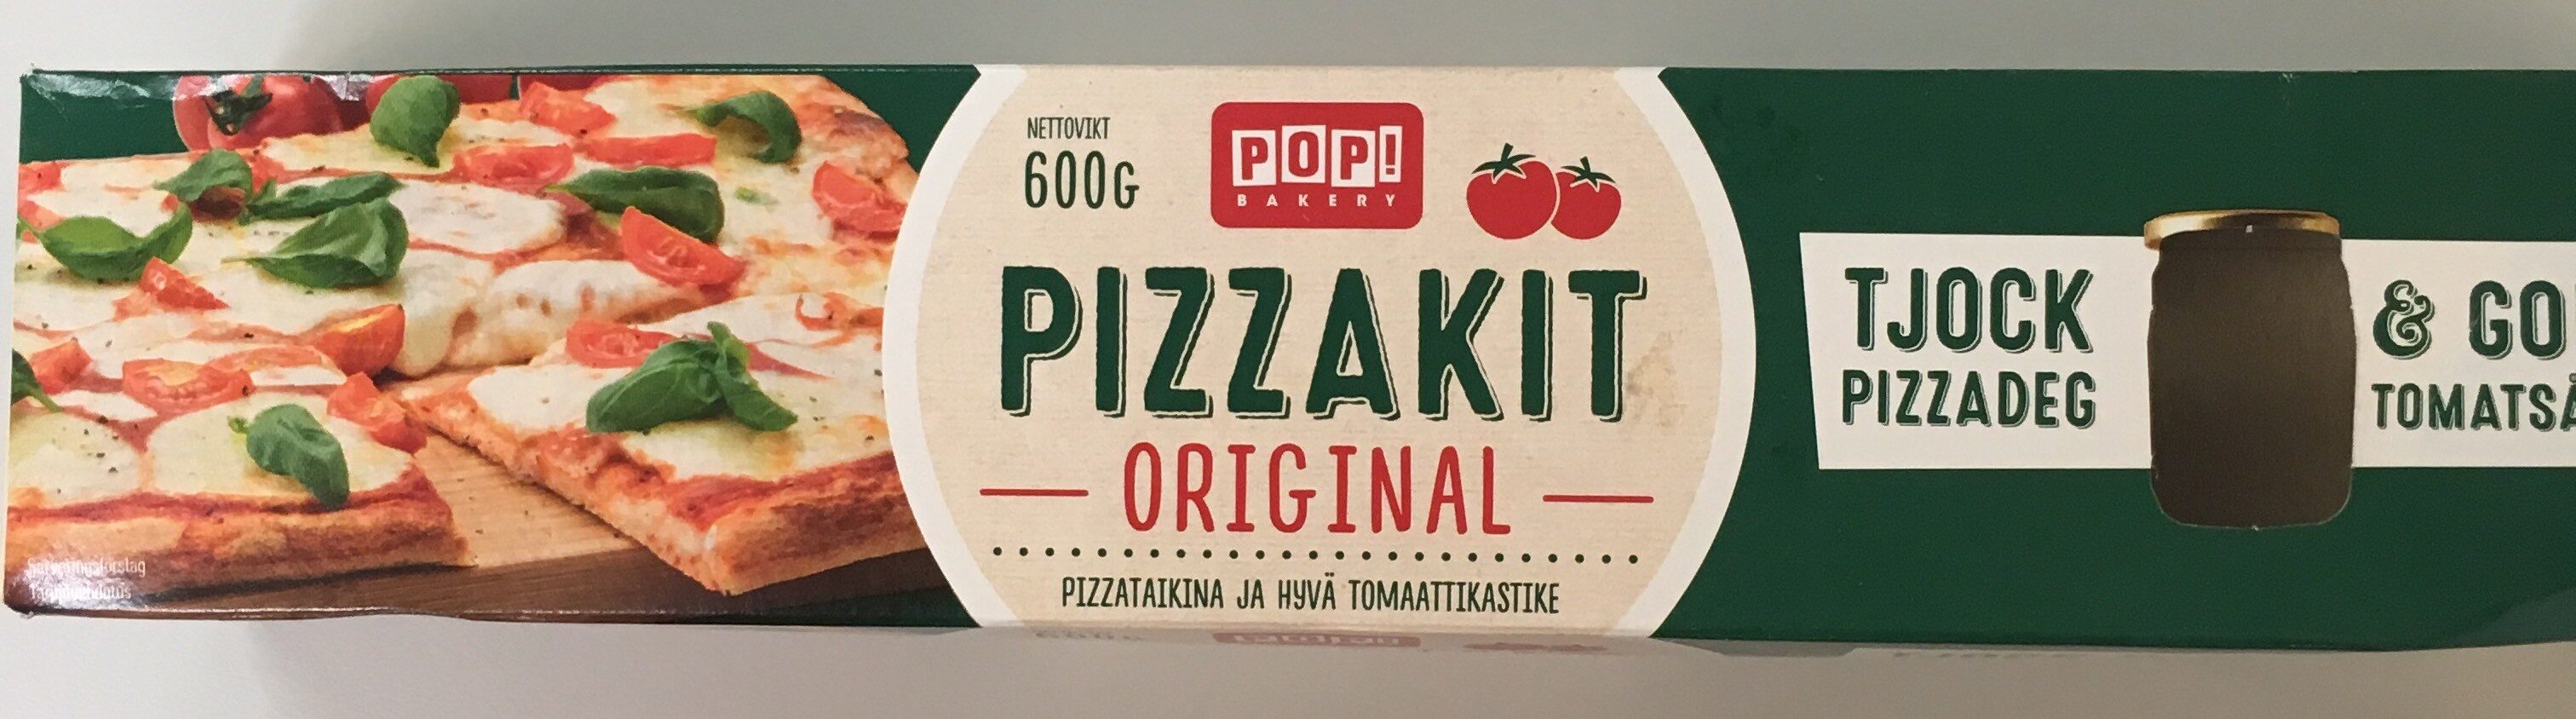 Pizzakit Orginal - Tuote